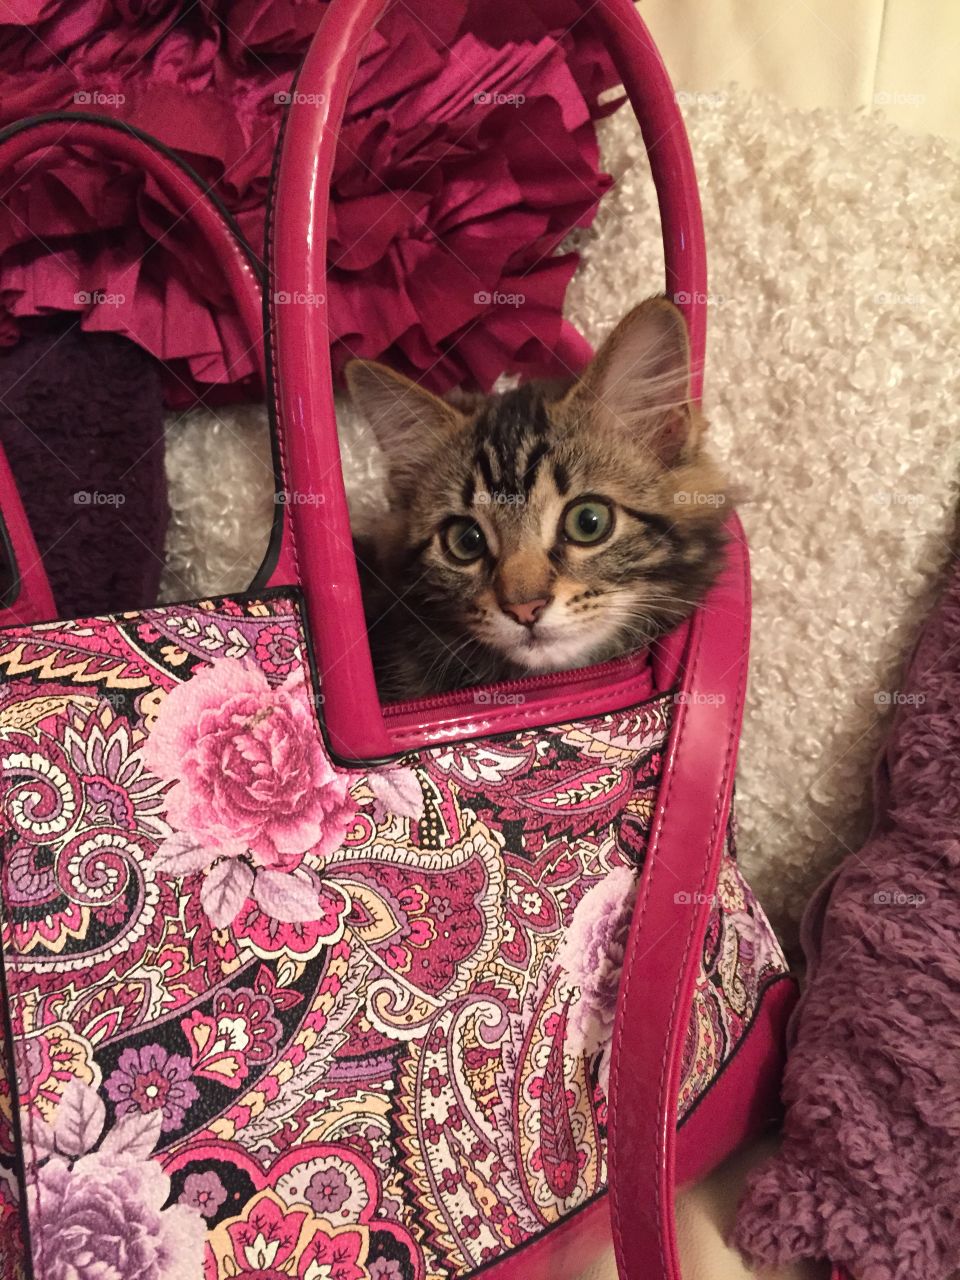 Kitten in bag